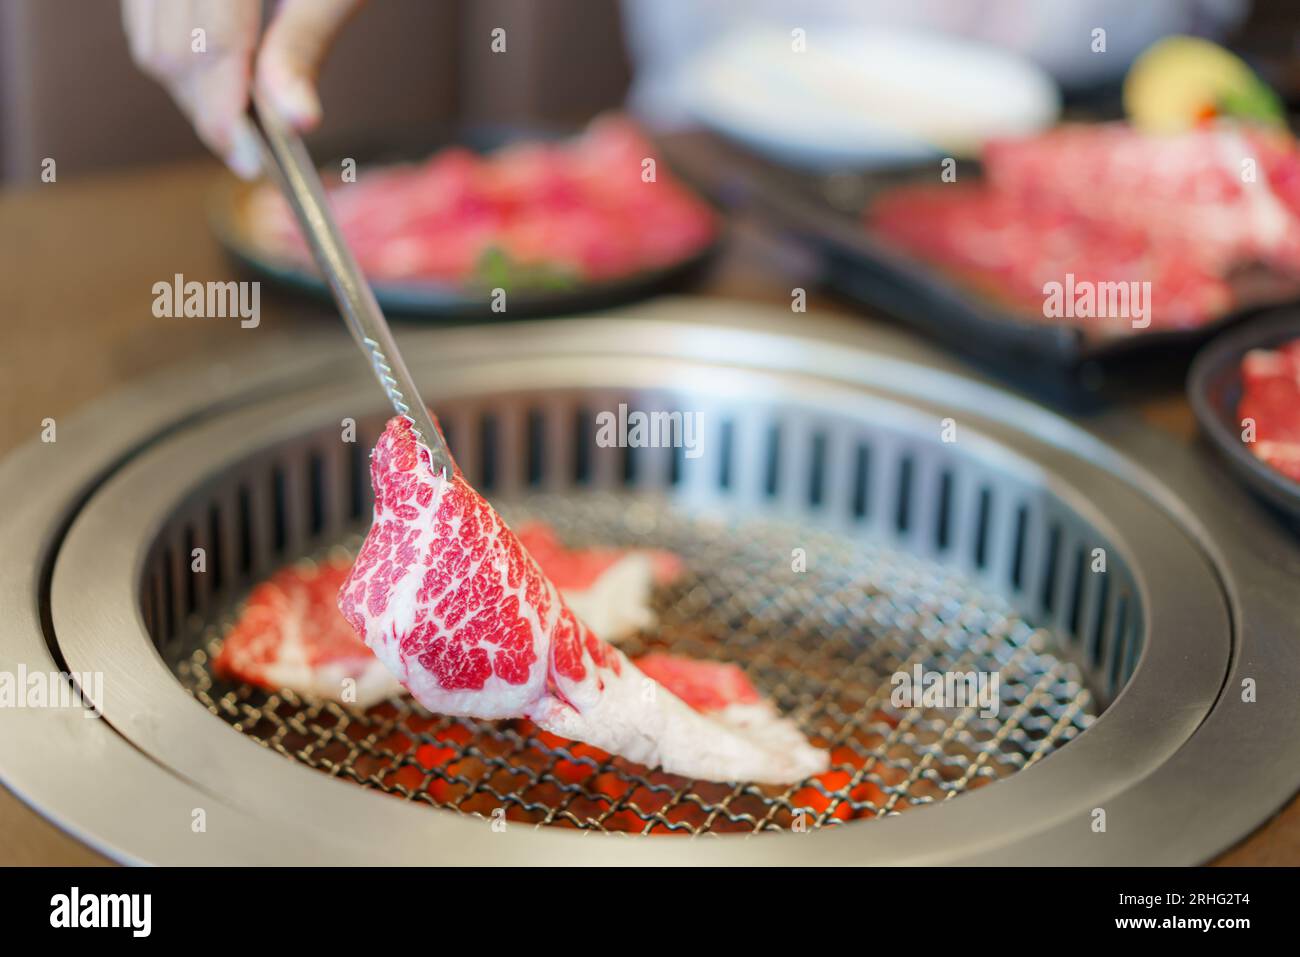 Woman's Hand utilizza pinze per posizionare il wagyu beef su un piatto, pronto per grigliare su carbone, migliorando l'esperienza culinaria in un ristorante giapponese Foto Stock